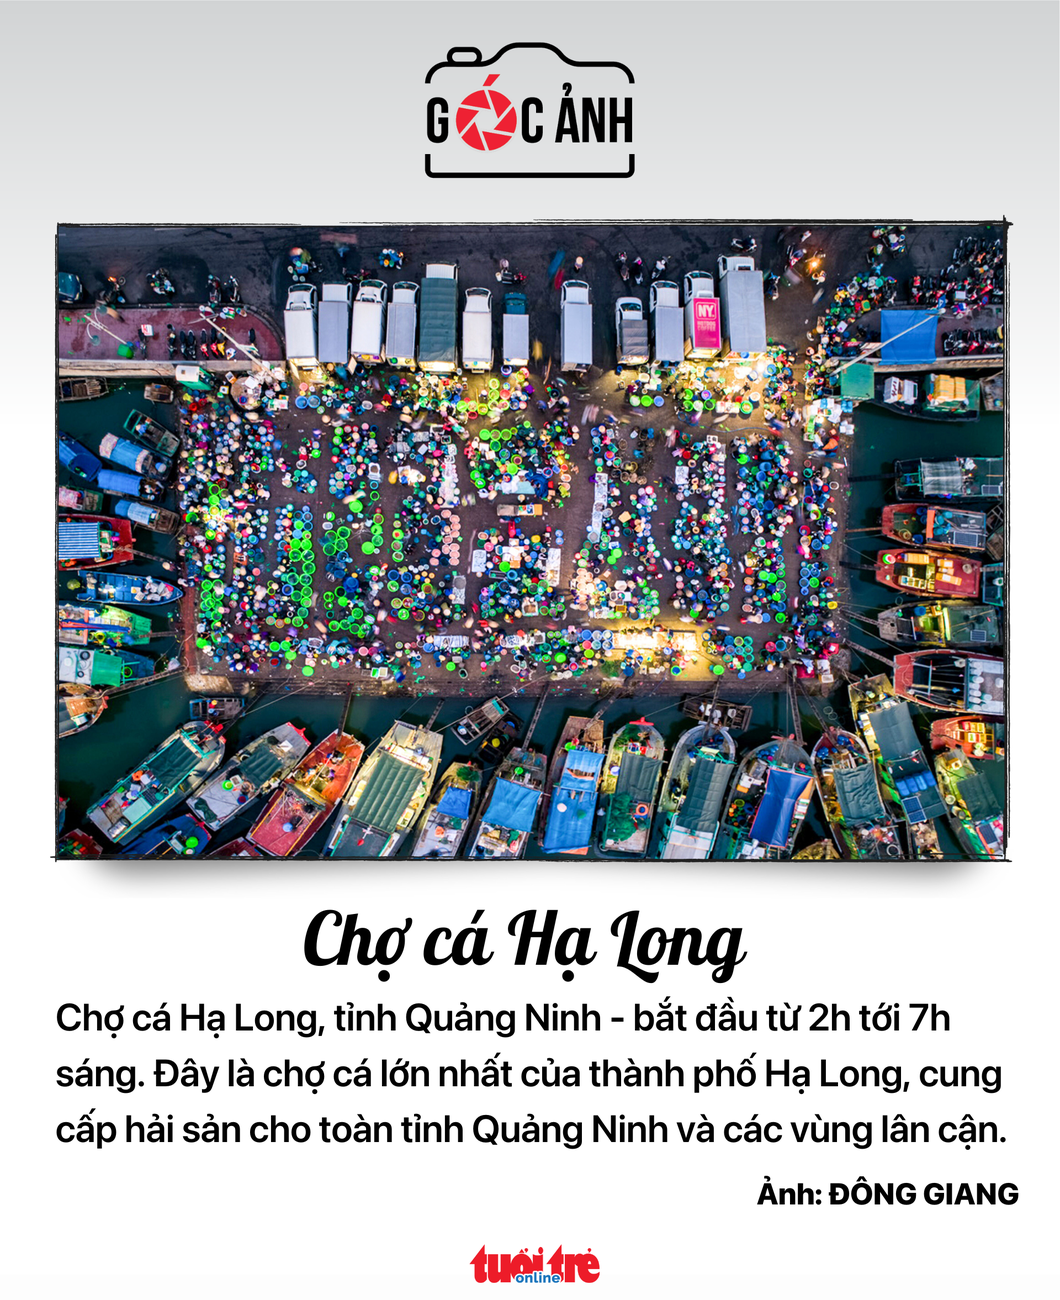 Chợ cá Hạ long - Ảnh: ĐÔNG GIANG